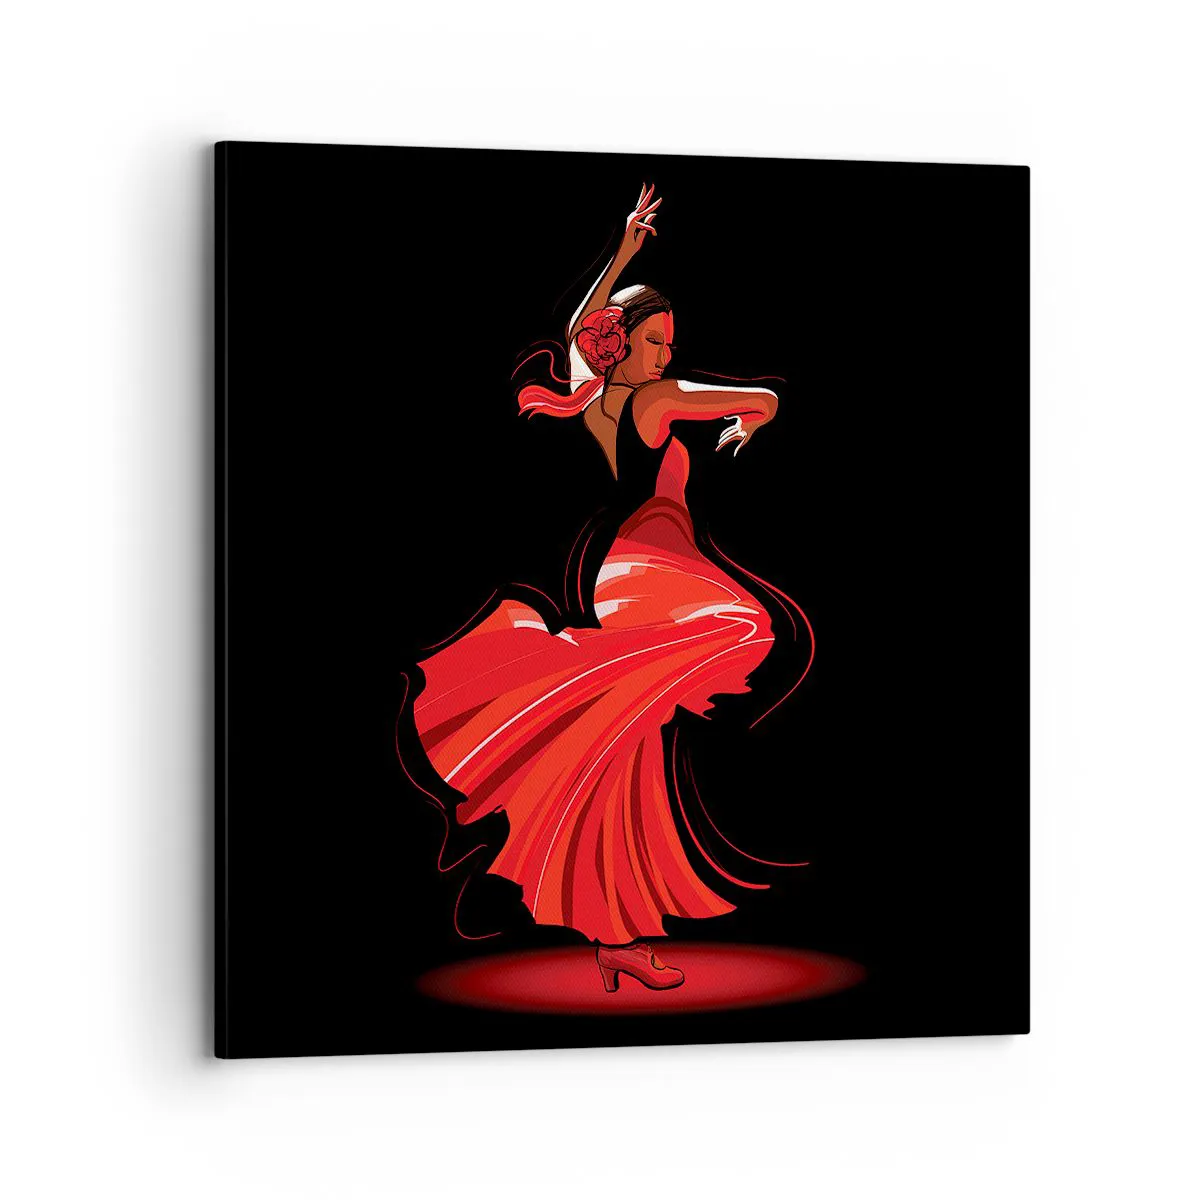 Obraz na Płótnie Arttor 70x70 cm - Ognisty duch flamenco - Tancerka, Flamenco, Do Salonu, Do Sypialni, Czarny, Czerwony, Poziomy, Płótno, AC70x70-4121